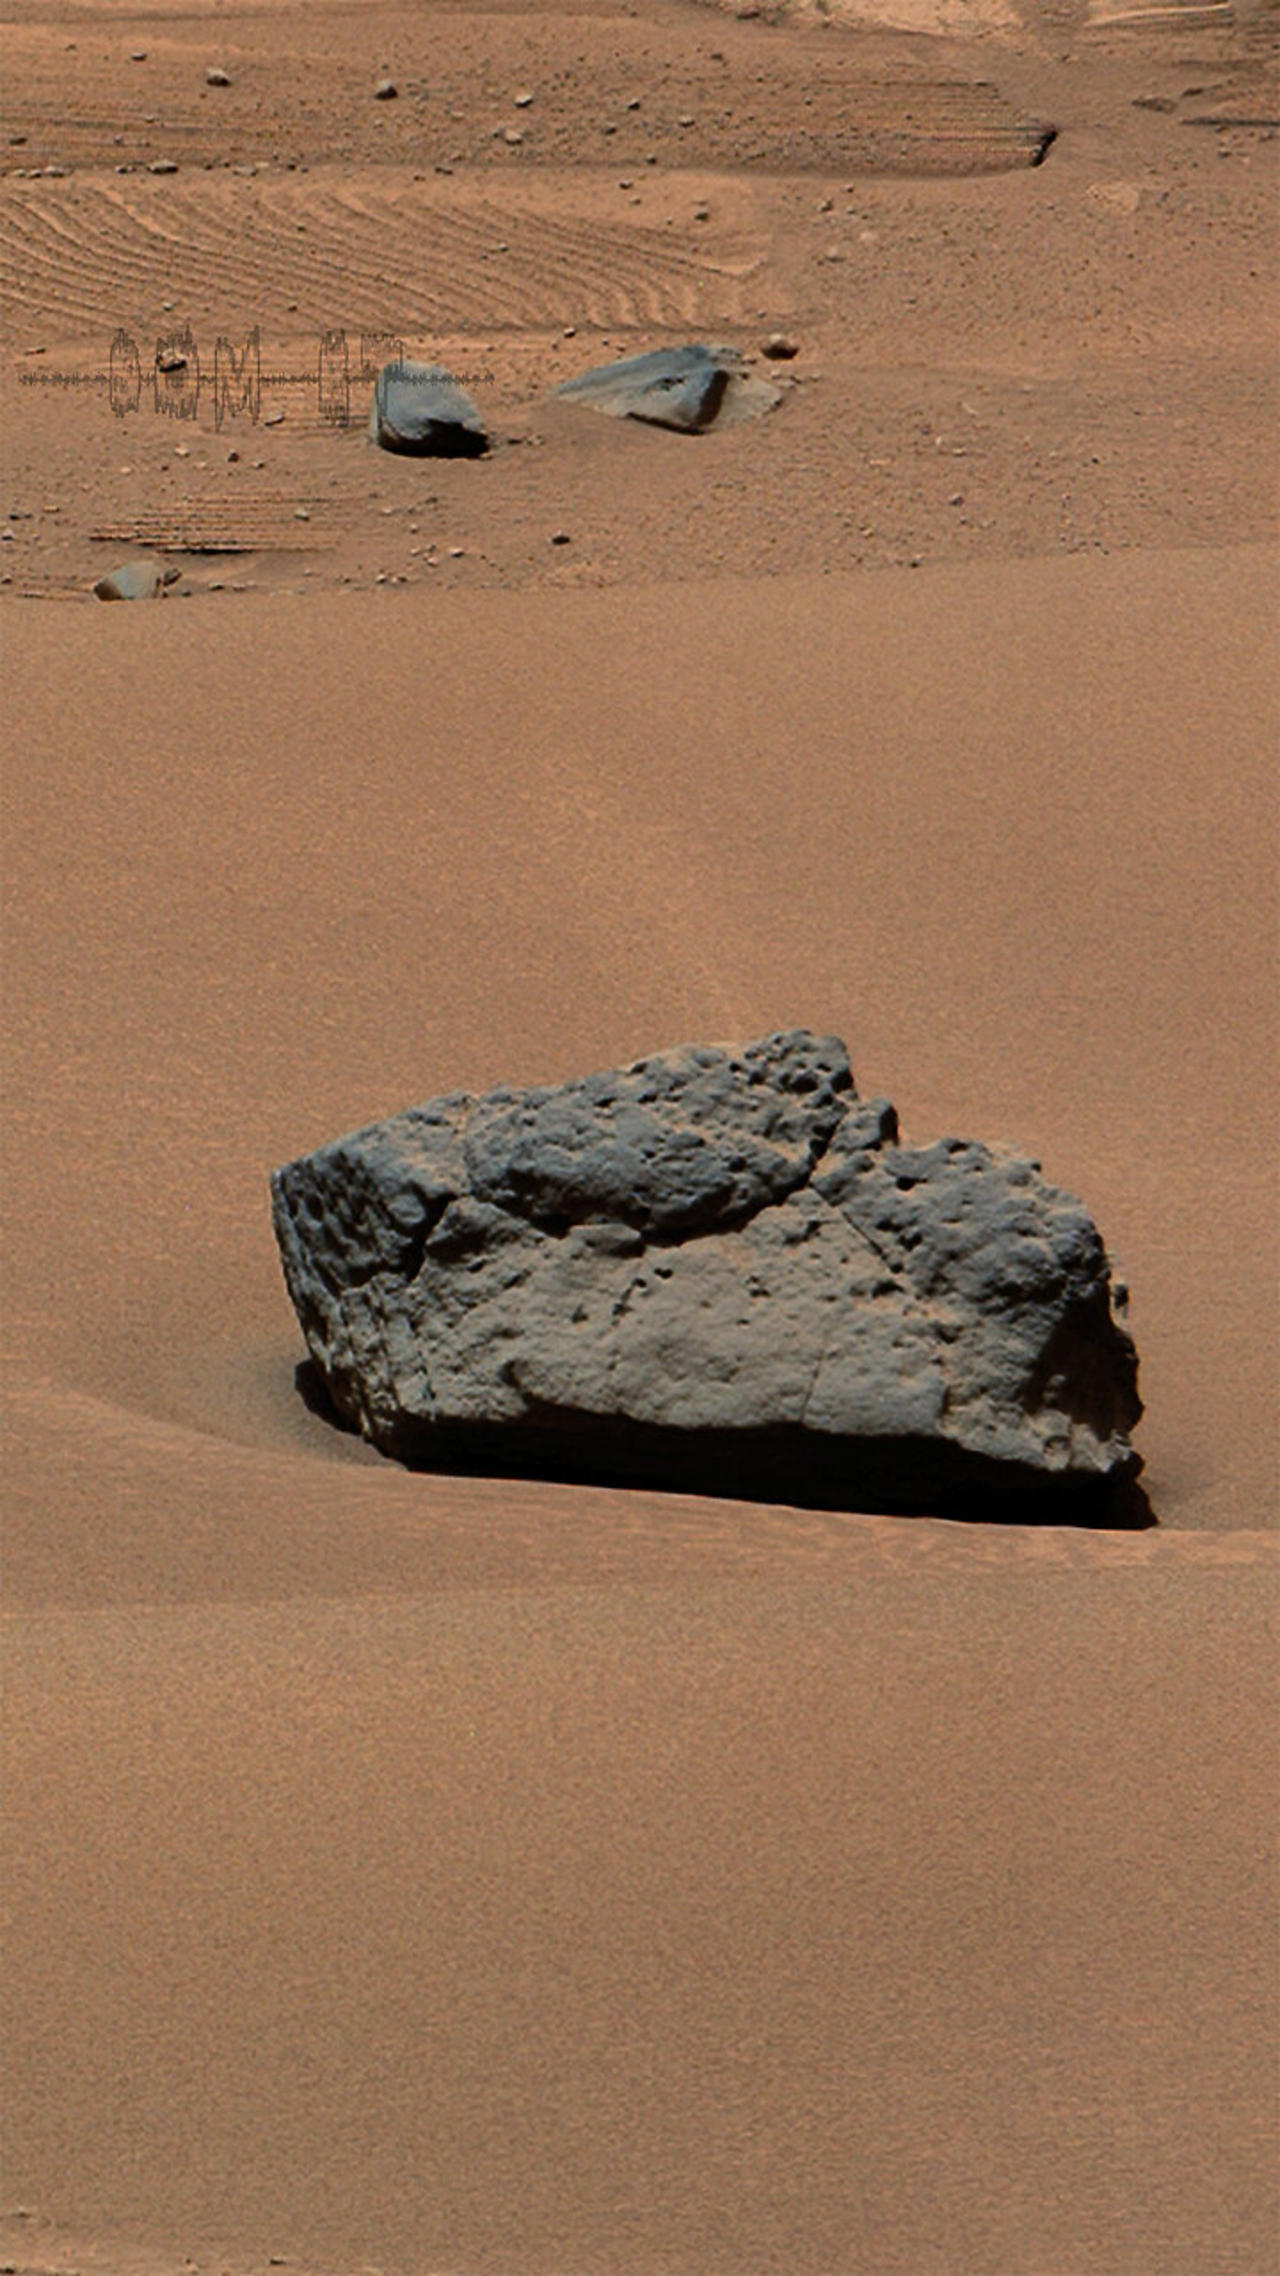 Som ET - 58 - Mars - Curiosity Sol 3748